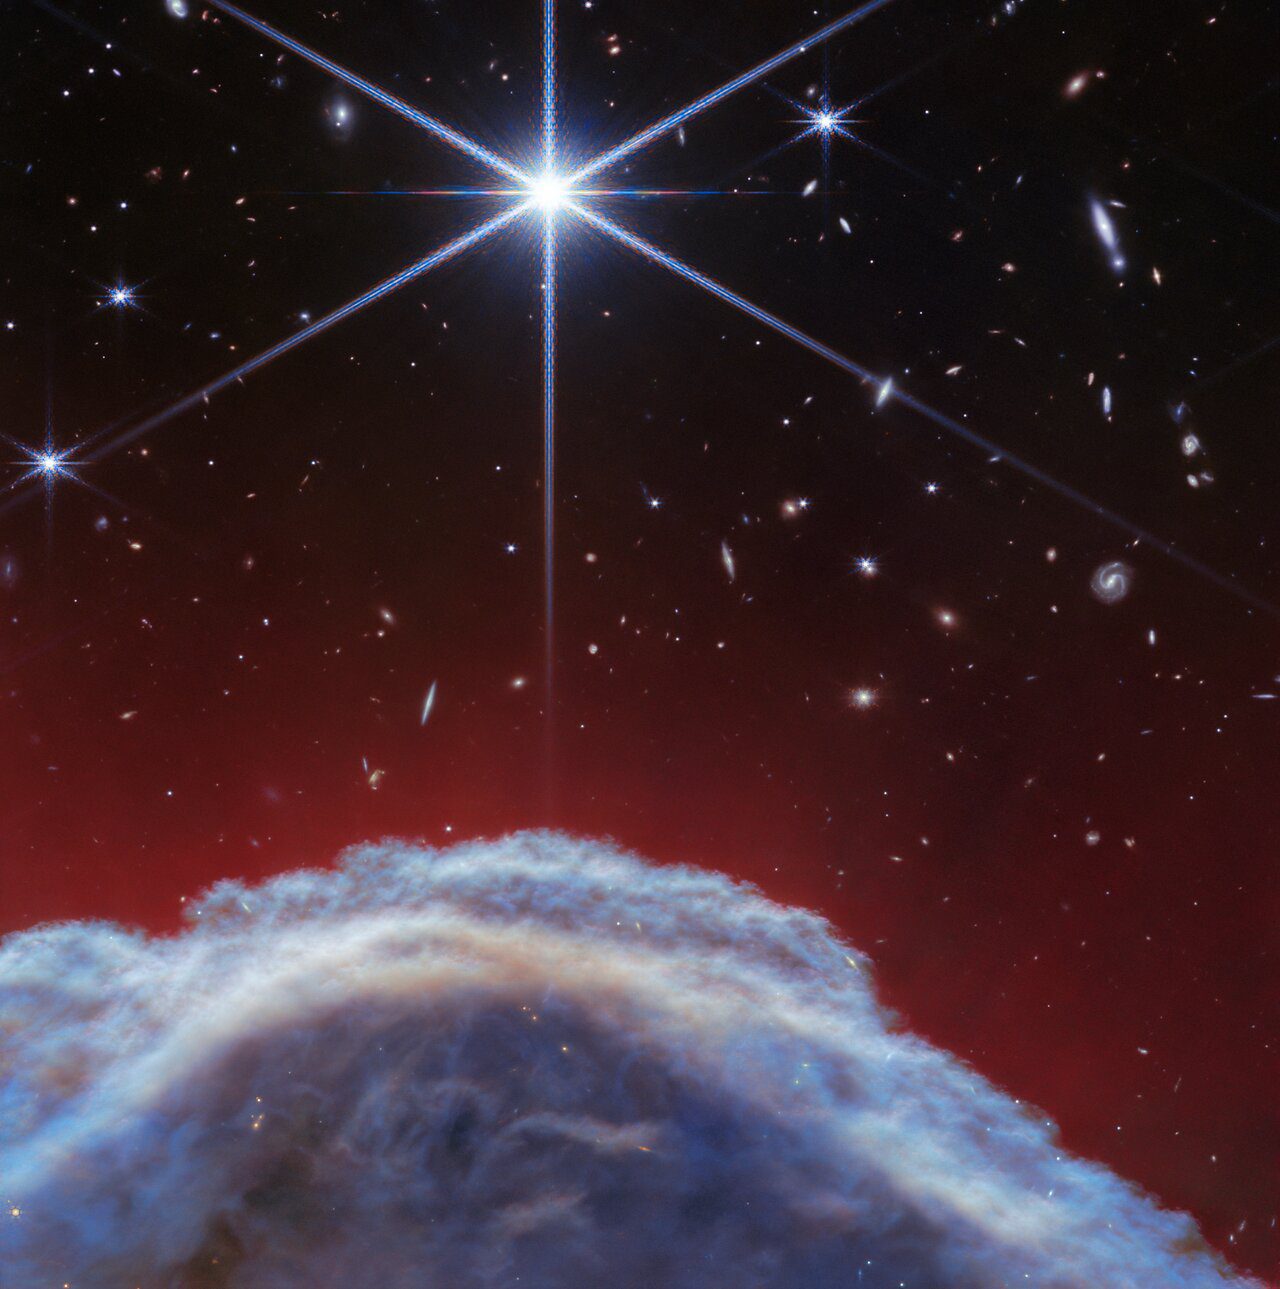 Uma imagem aproximada da Nebulosa Cabeça de Cavalo vista usando o instrumento NIRCam (Near Infrared Camera) do JWST.